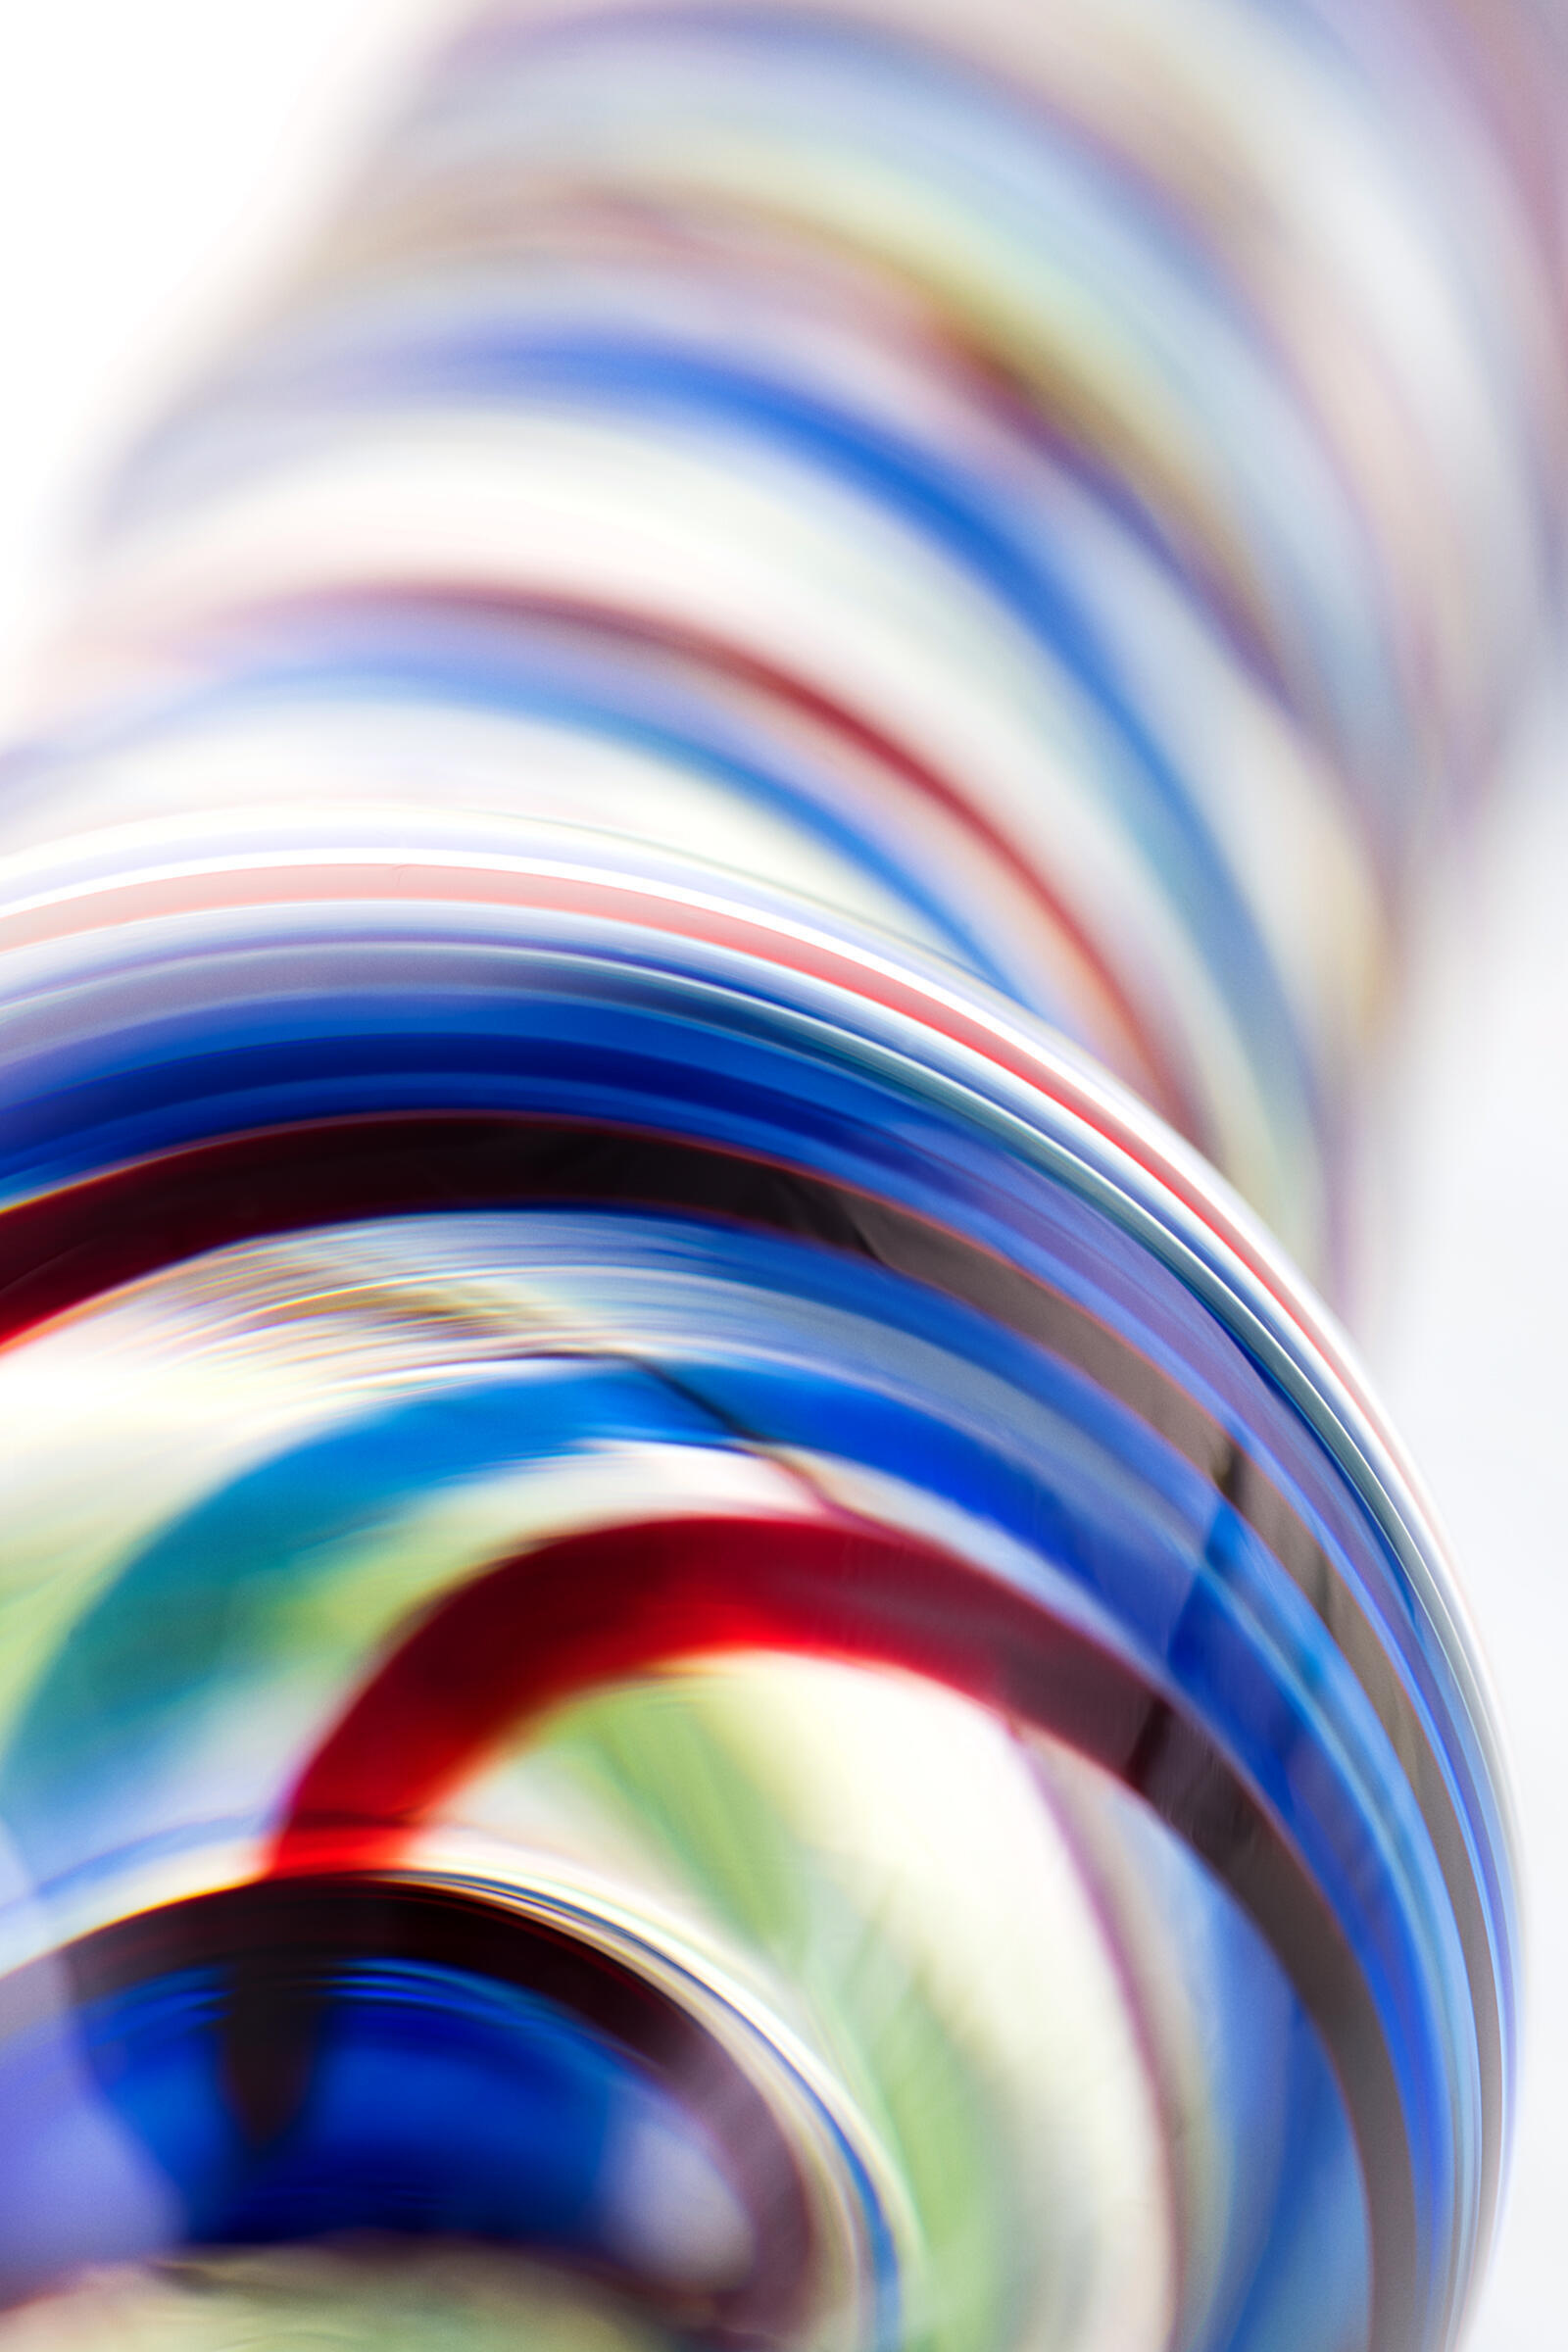 Фаллоимитатор Sexus Glass спиралевидный, разноцветный, 16,5 см